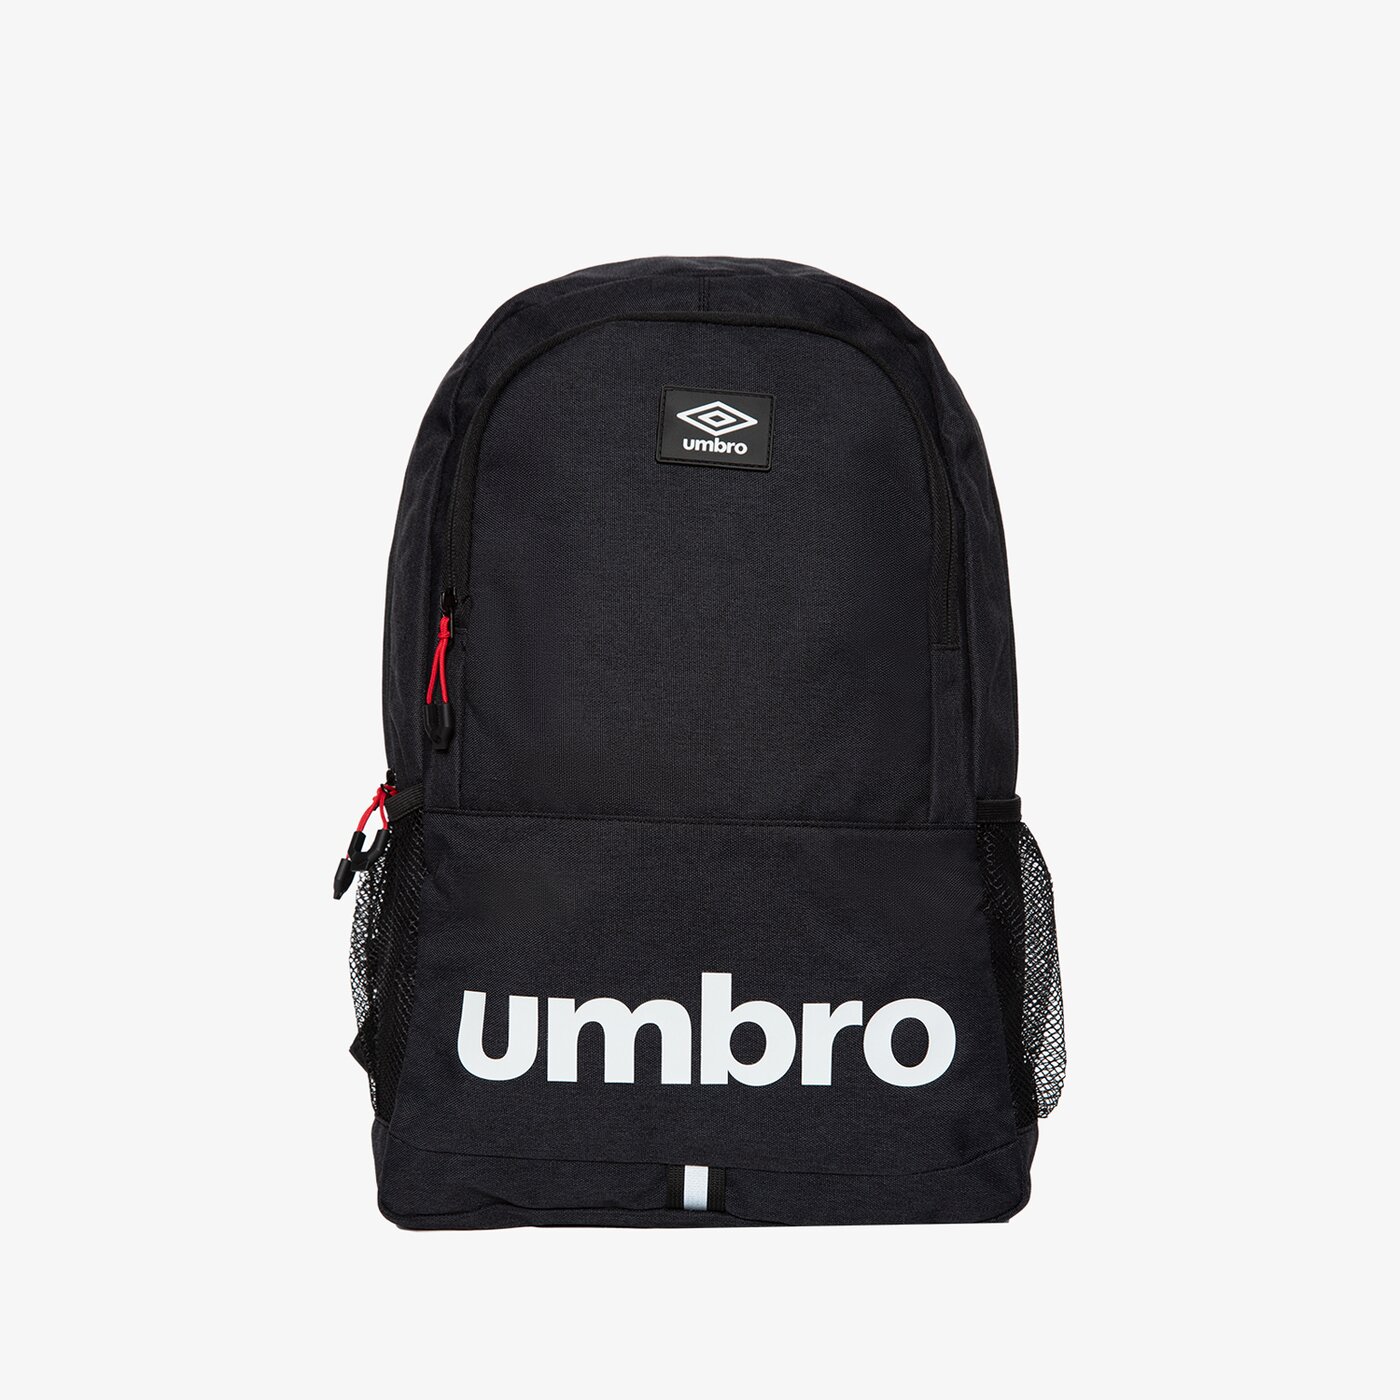 Рюкзак Umbro Litton, черный водонепроницаемый и износостойкий рюкзак из ткани оксфорд с двумя боковыми сетчатыми карманами